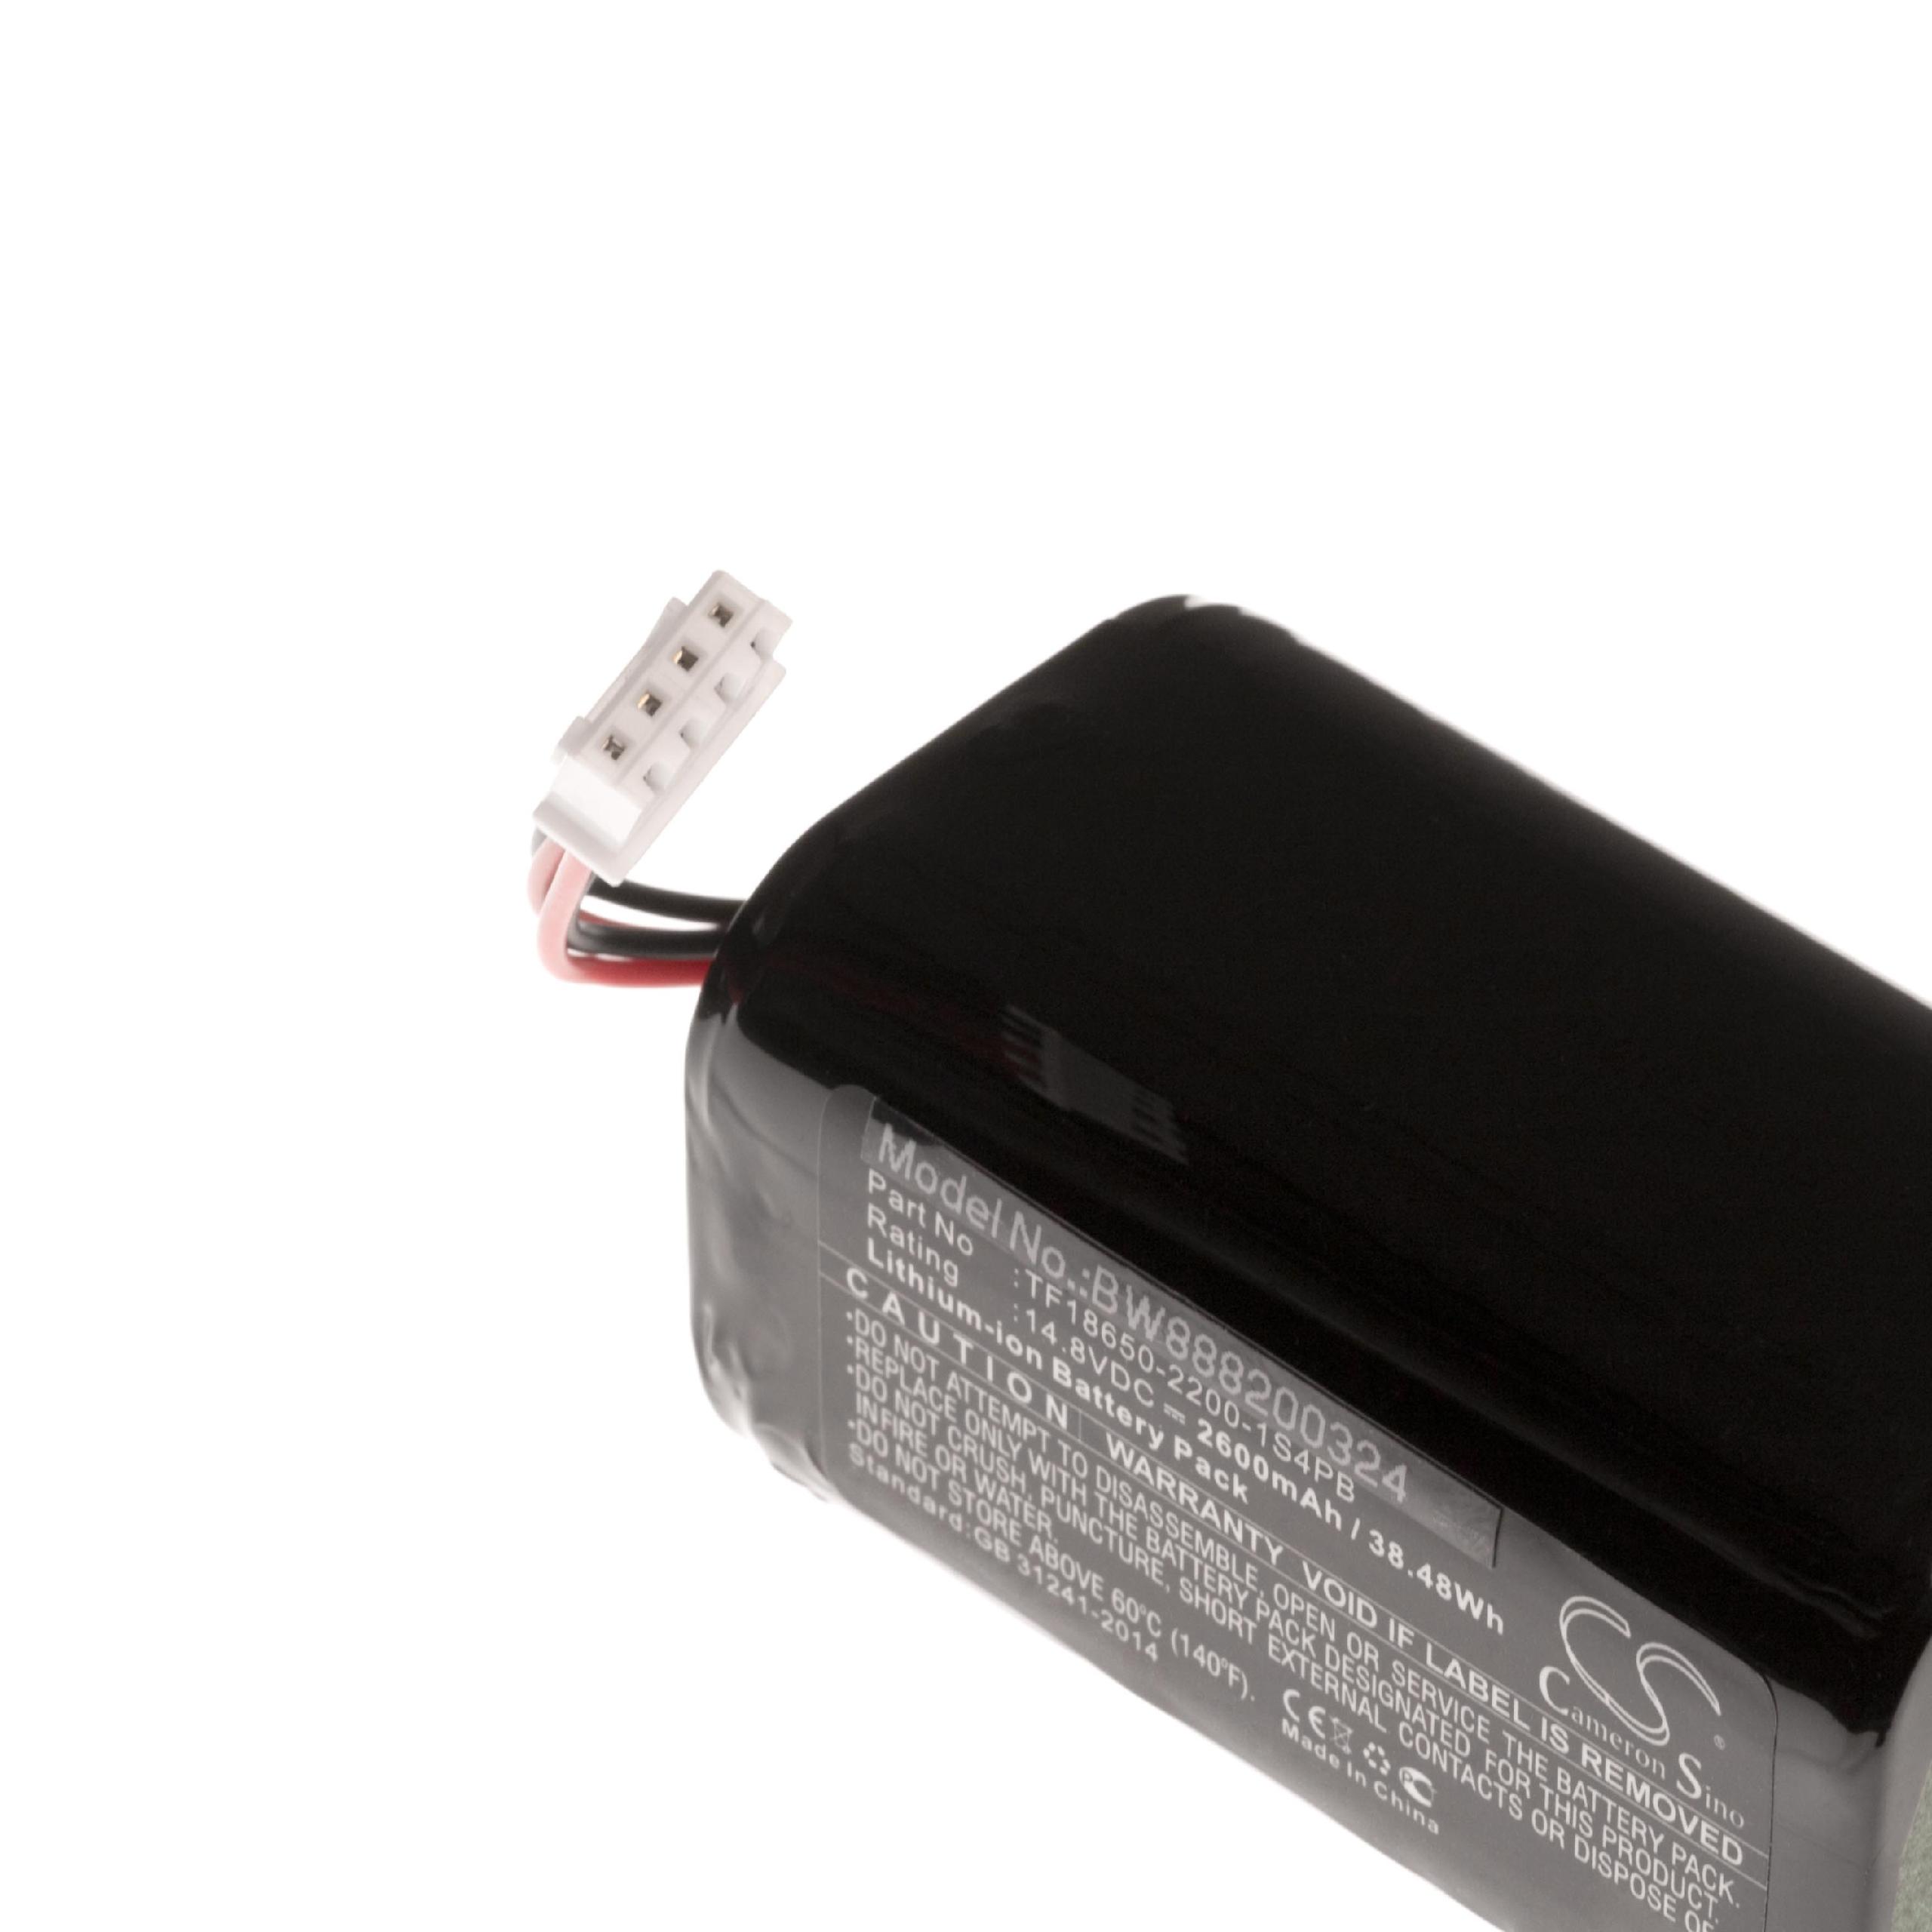 Batterie remplace Audio Pro TF18650-2200-1S4PB pour enceinte Audio Pro - 2600mAh 14,8V Li-ion